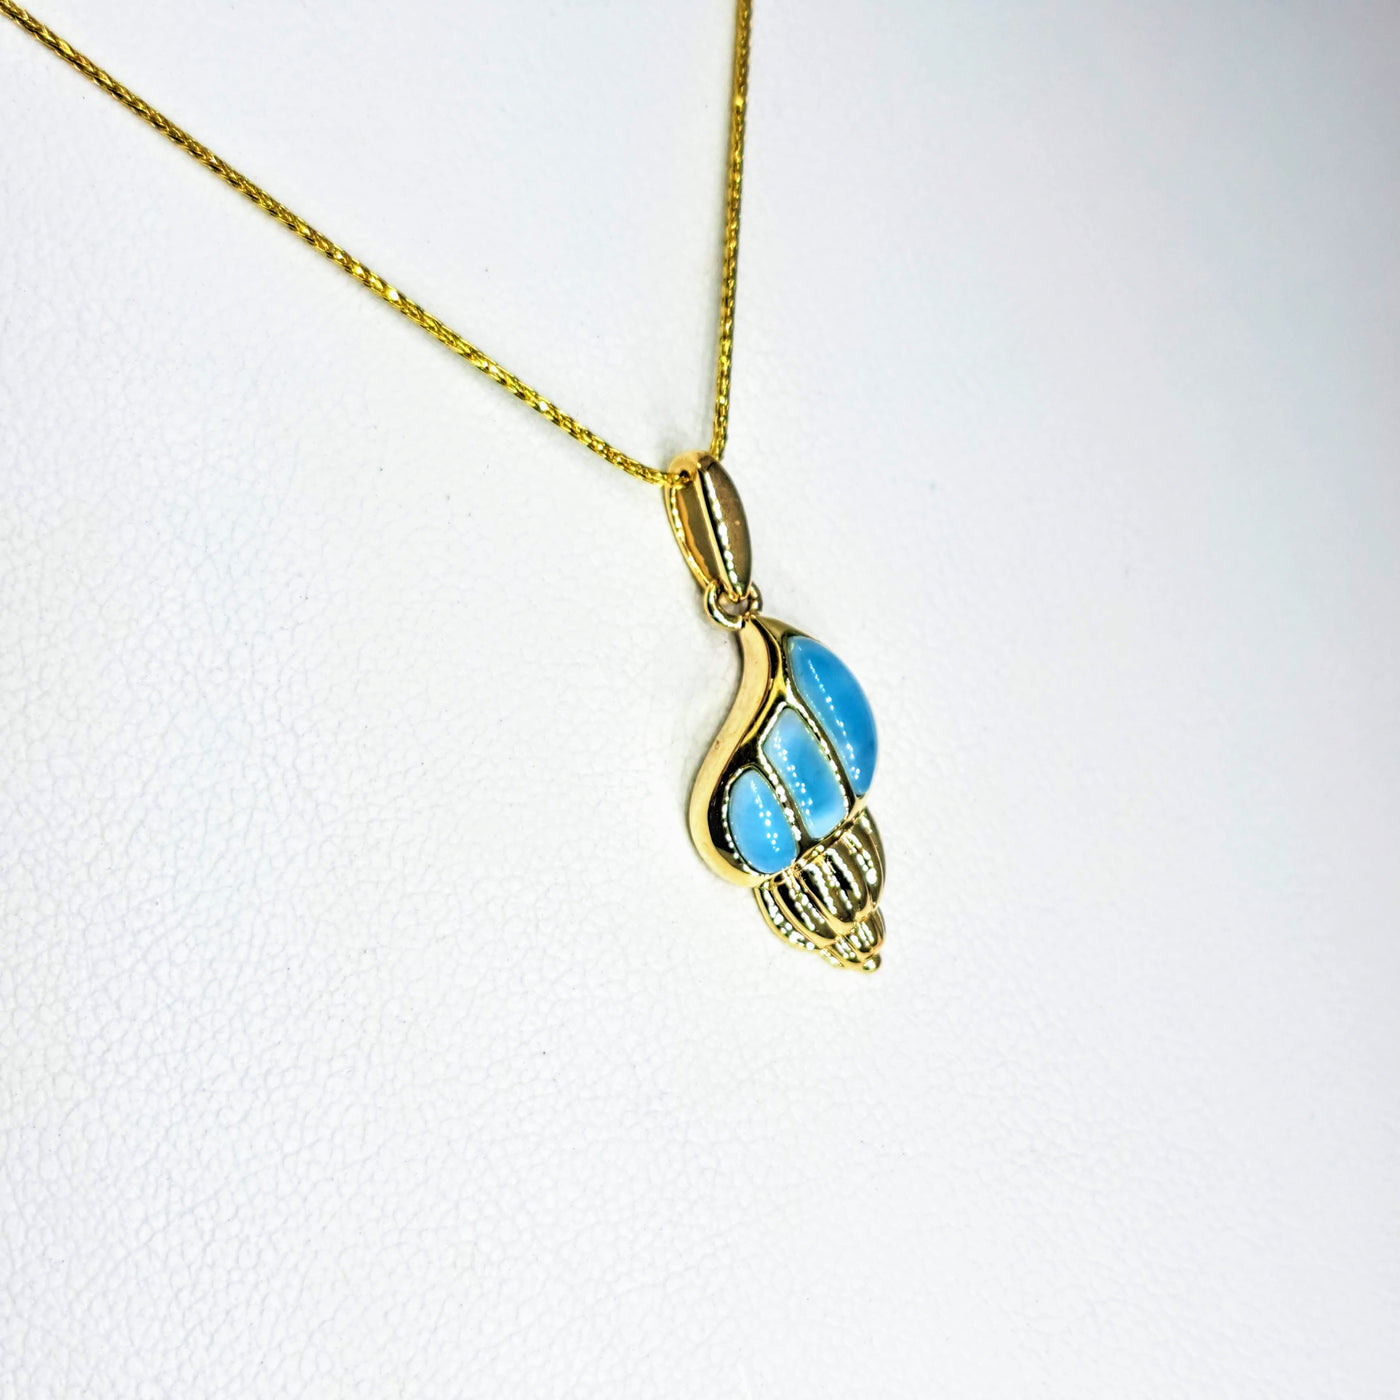 "Key West Conch" Pendant Necklace - Larimar, 14K Gold